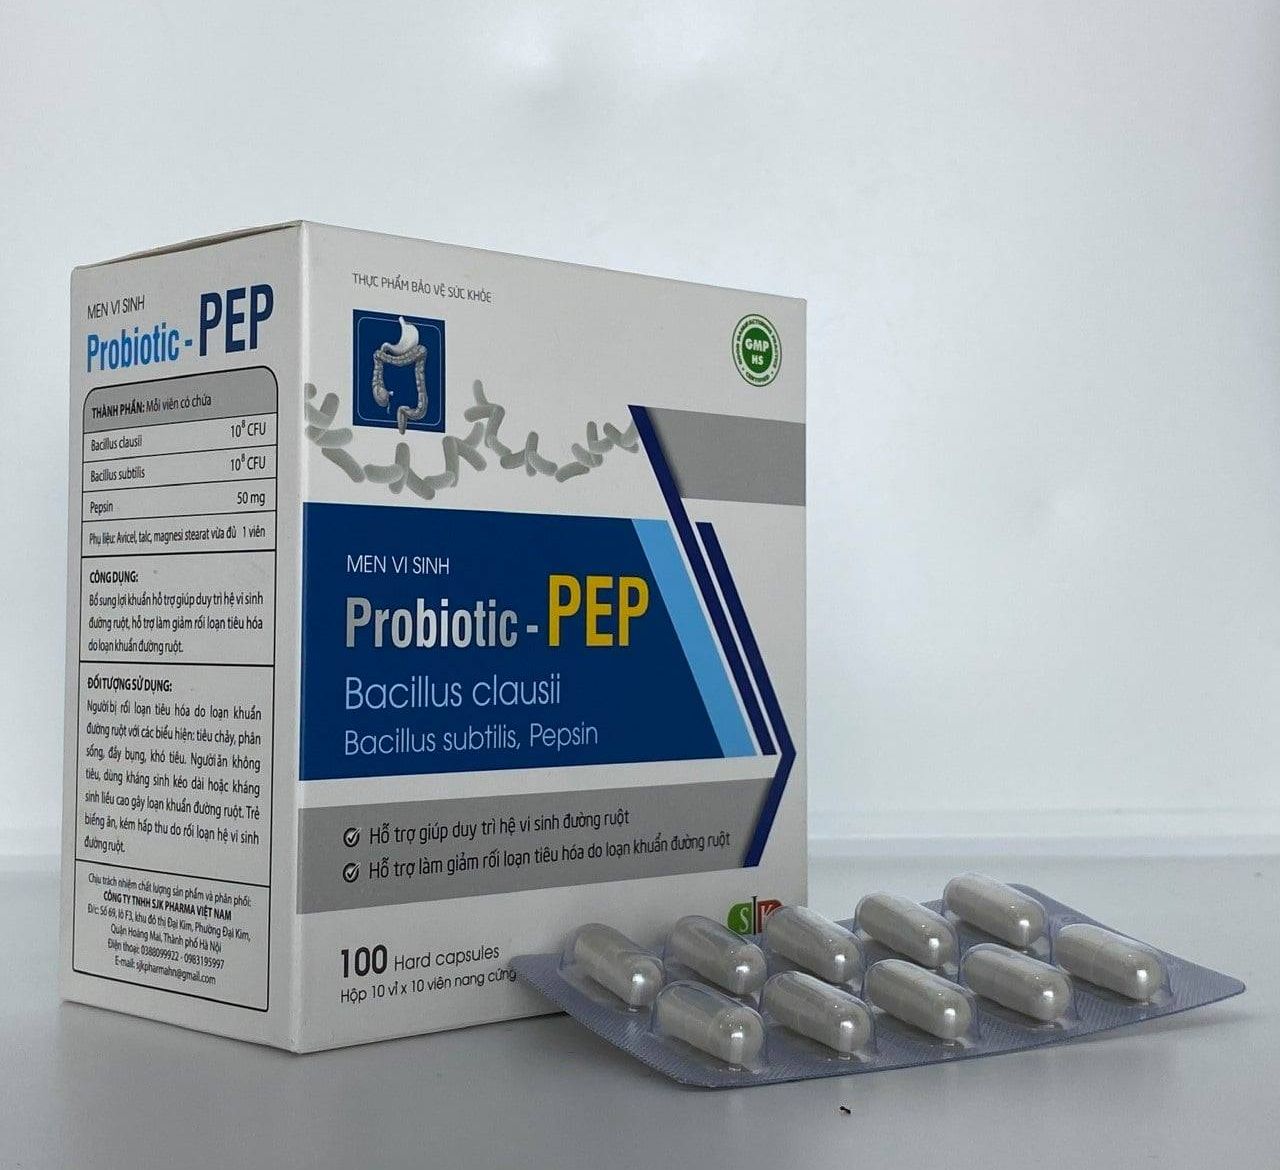 Men vi sinh PROBIOTIC - PEP dạng viên cải thiện hệ tiêu hóa - Hộp 100 viên